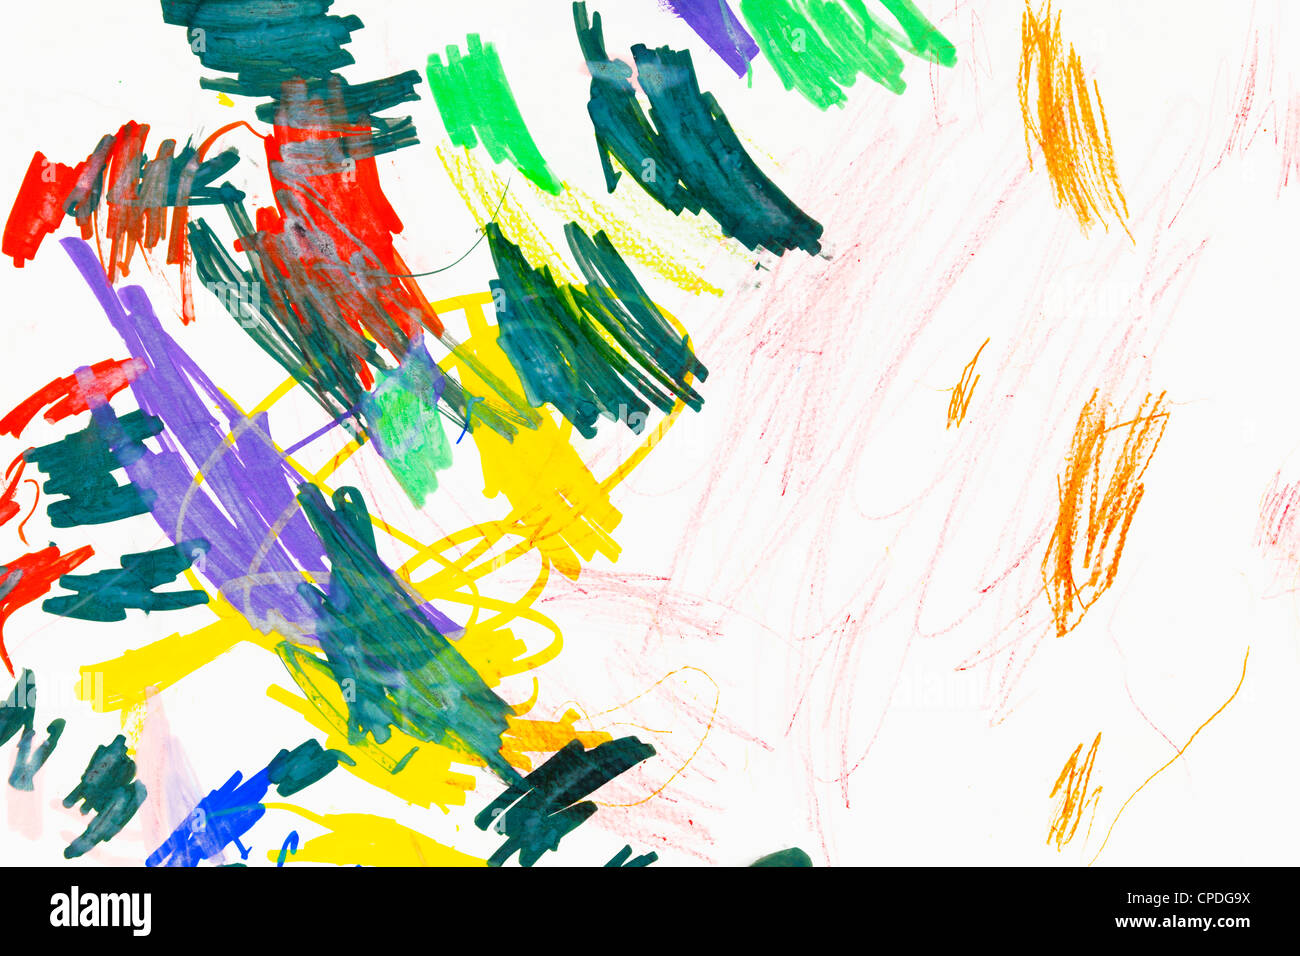 Le contraste clair-obscur dessin d'enfant avec différents matériaux Banque D'Images